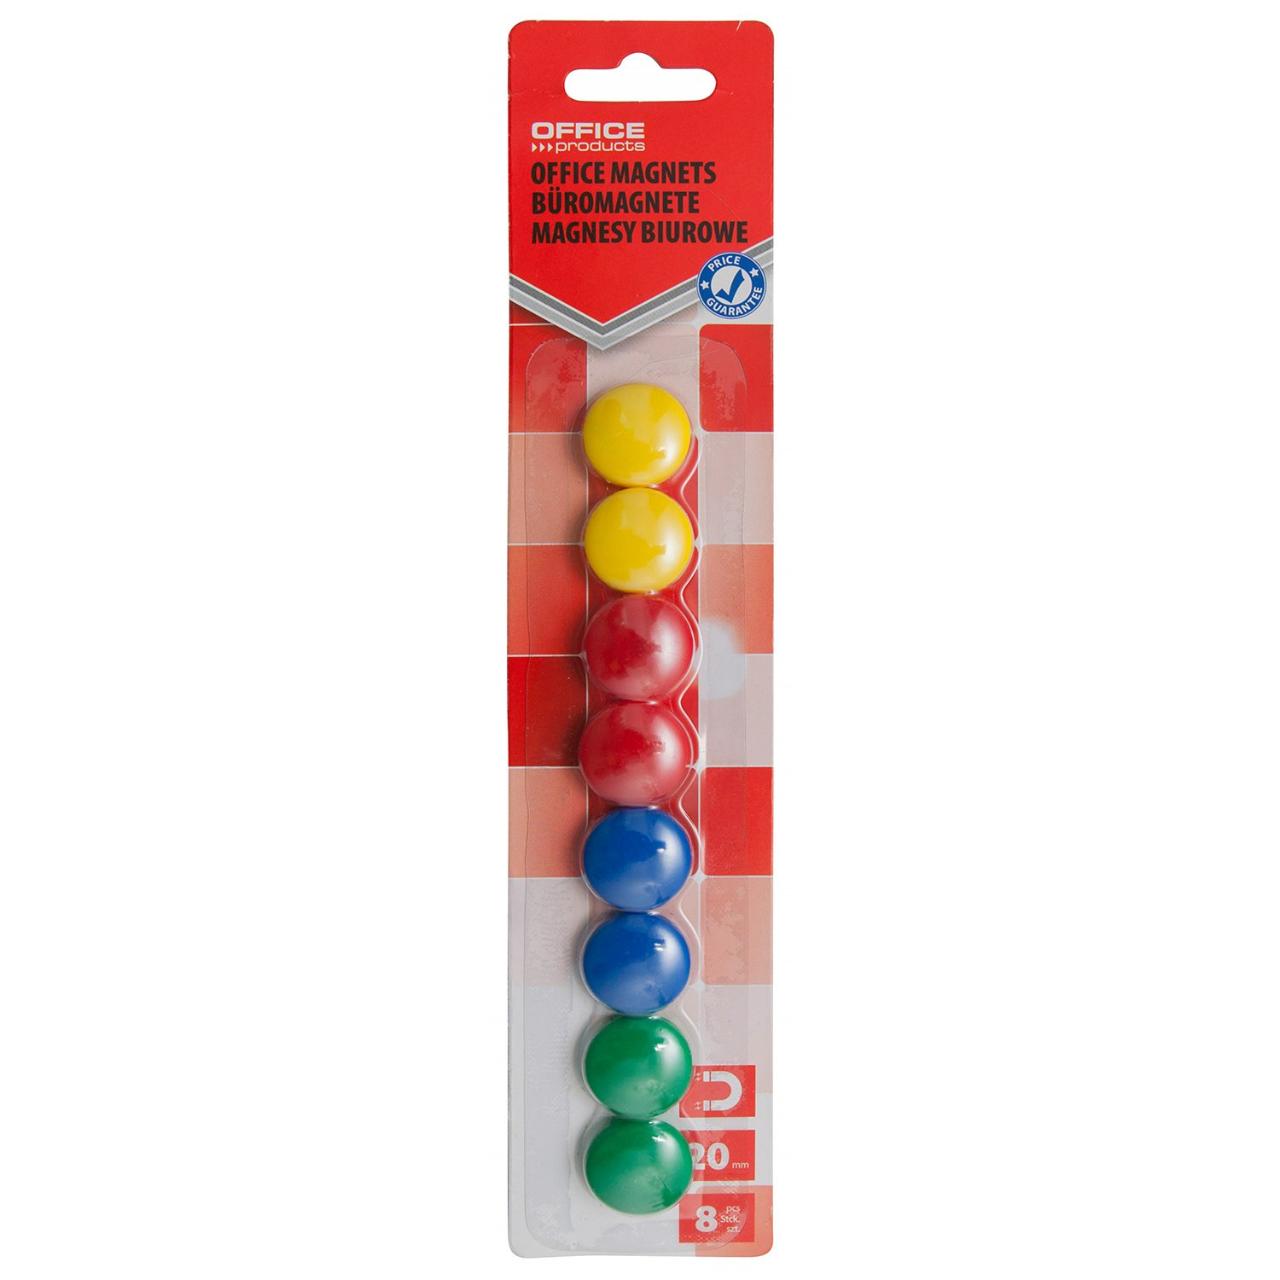 Magneti pentru table Office Products, 20 mm, 8 bucati/set, culori asortate